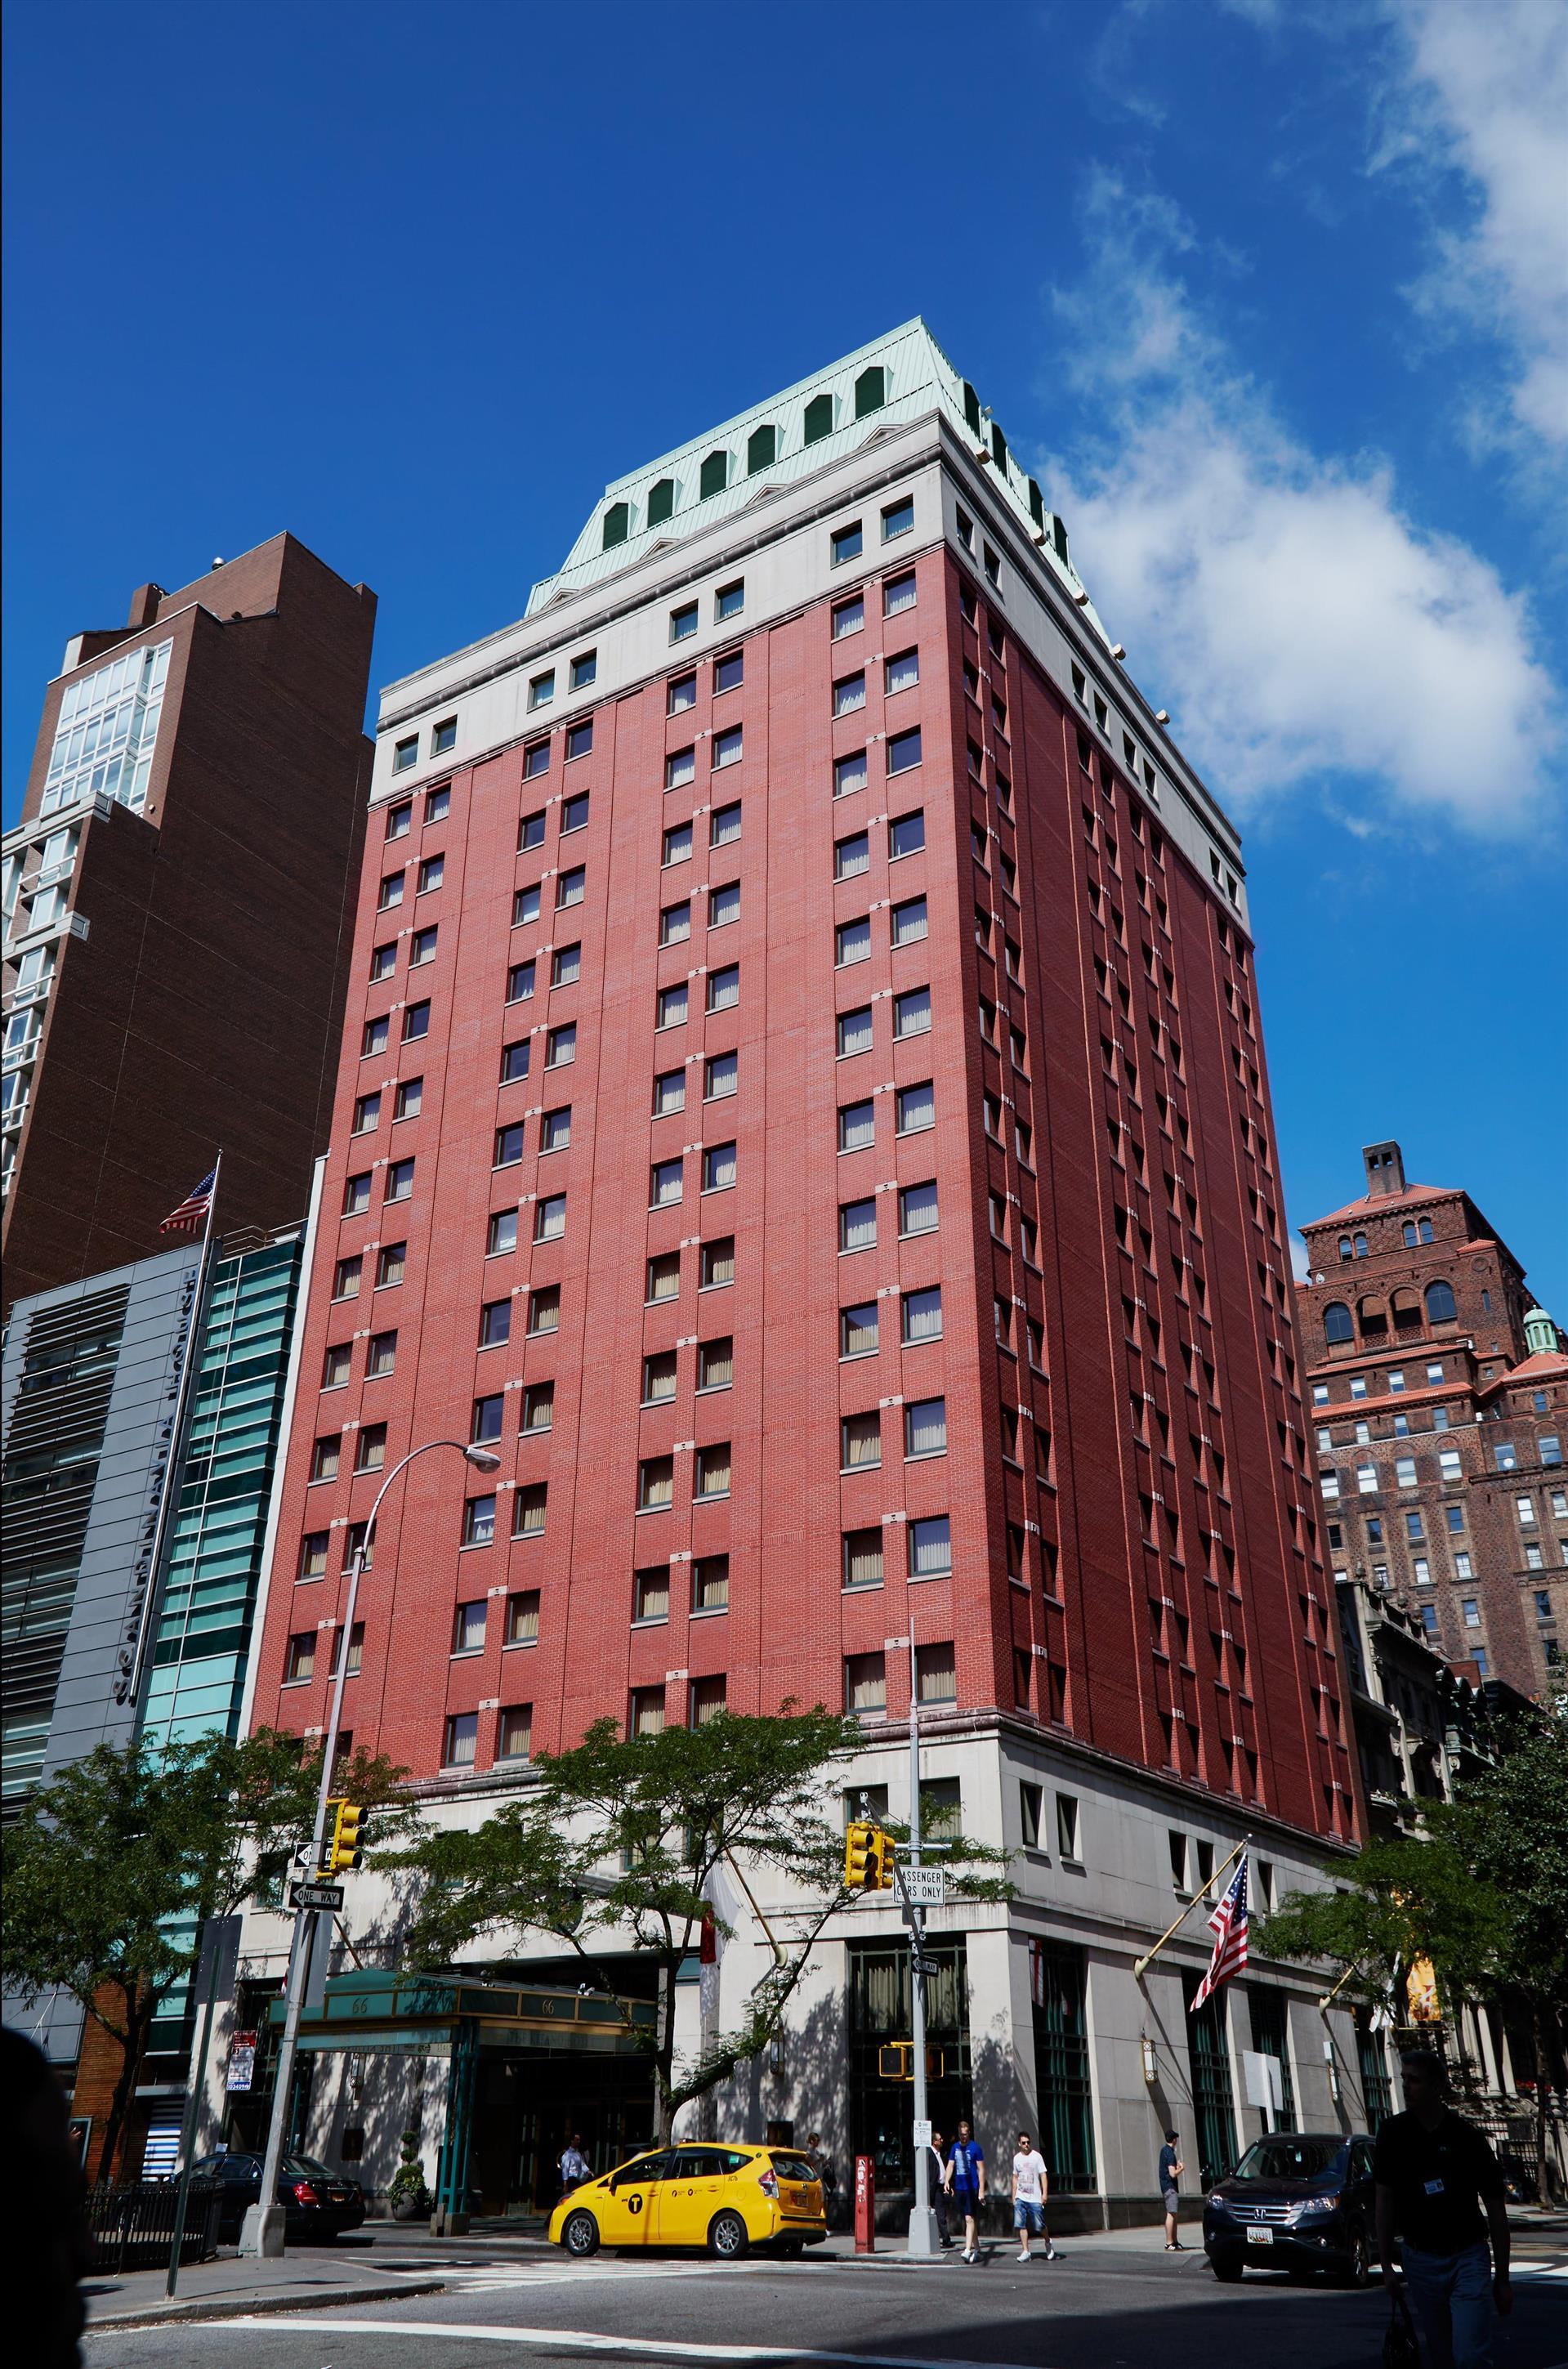 The Kitano Hotel New York in New York, NY